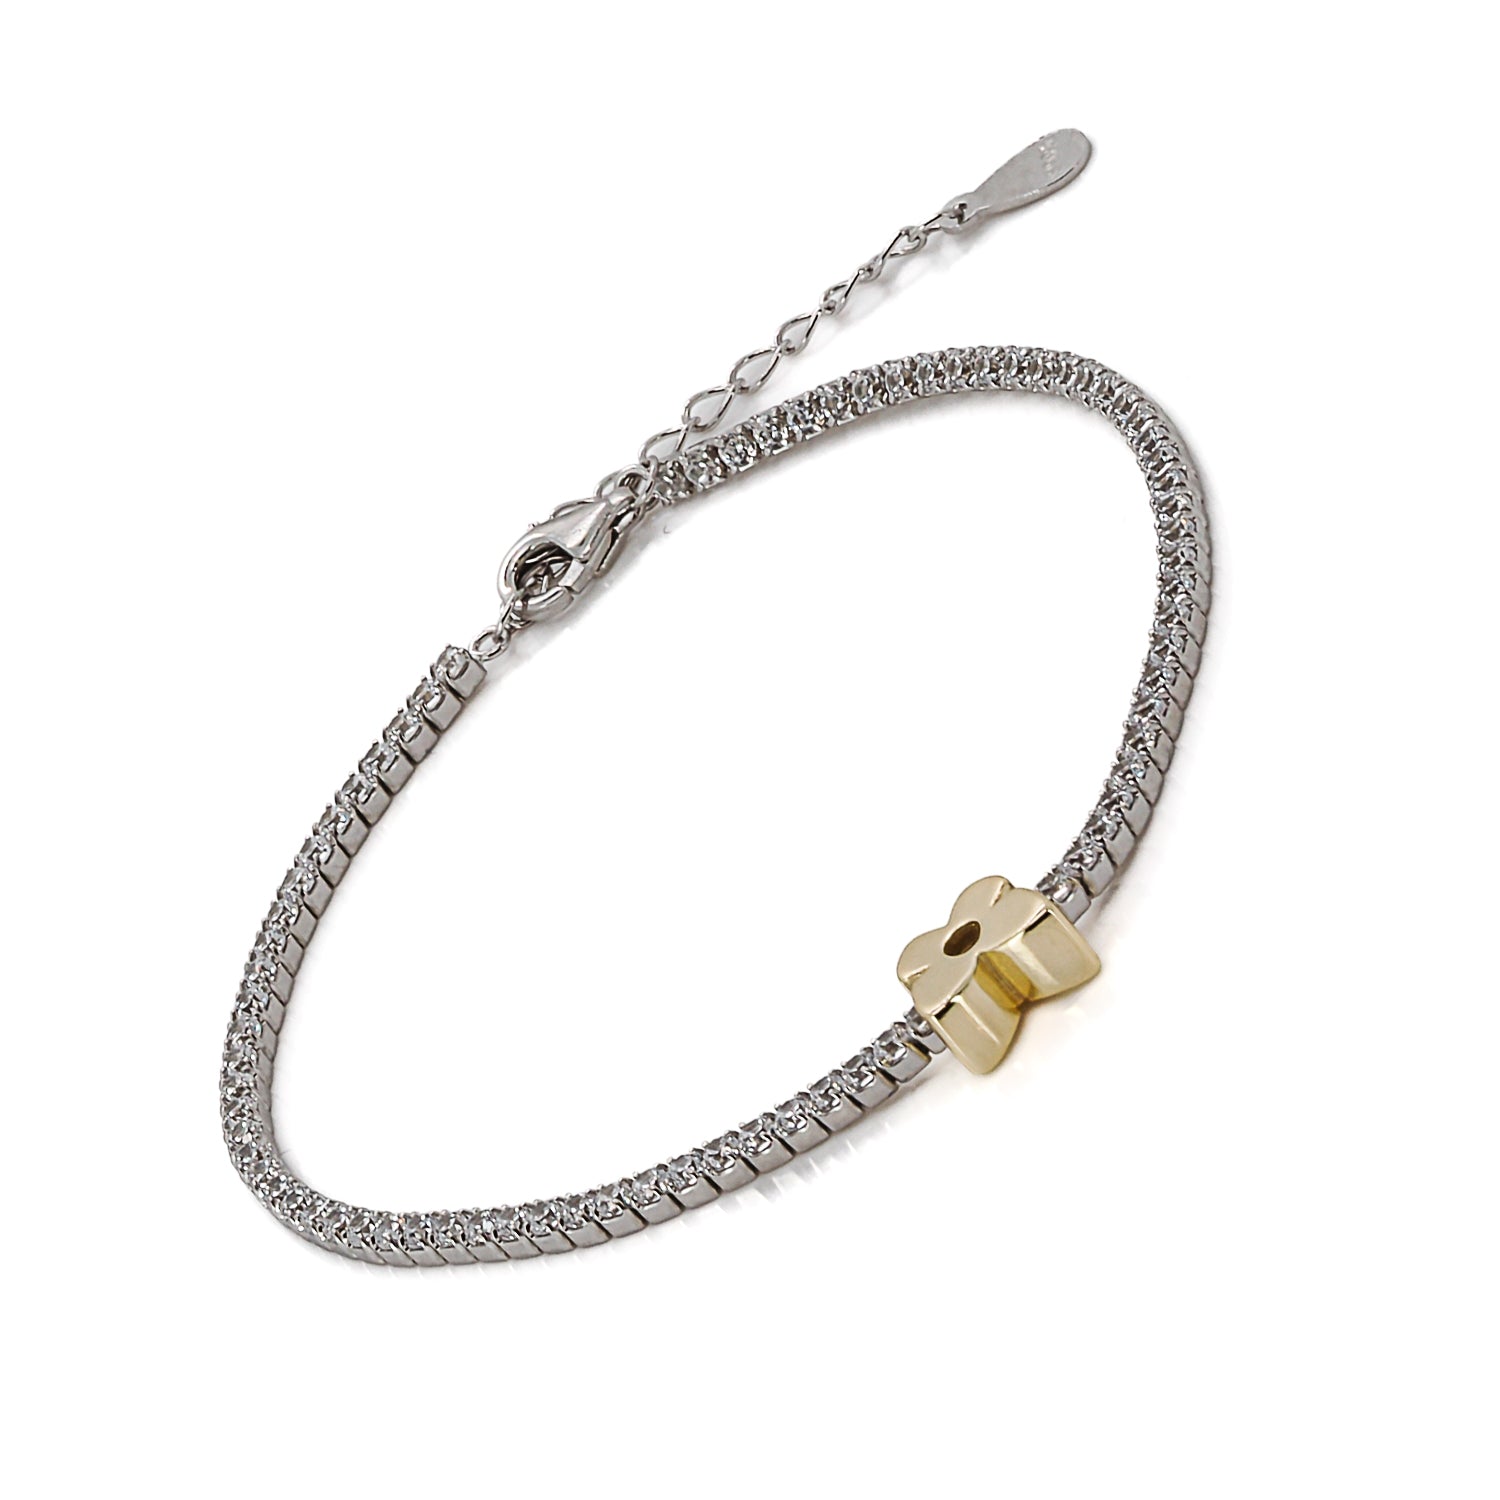 Adjustable beauty: Gold Butterfly Bracelet&#39;s versatility.